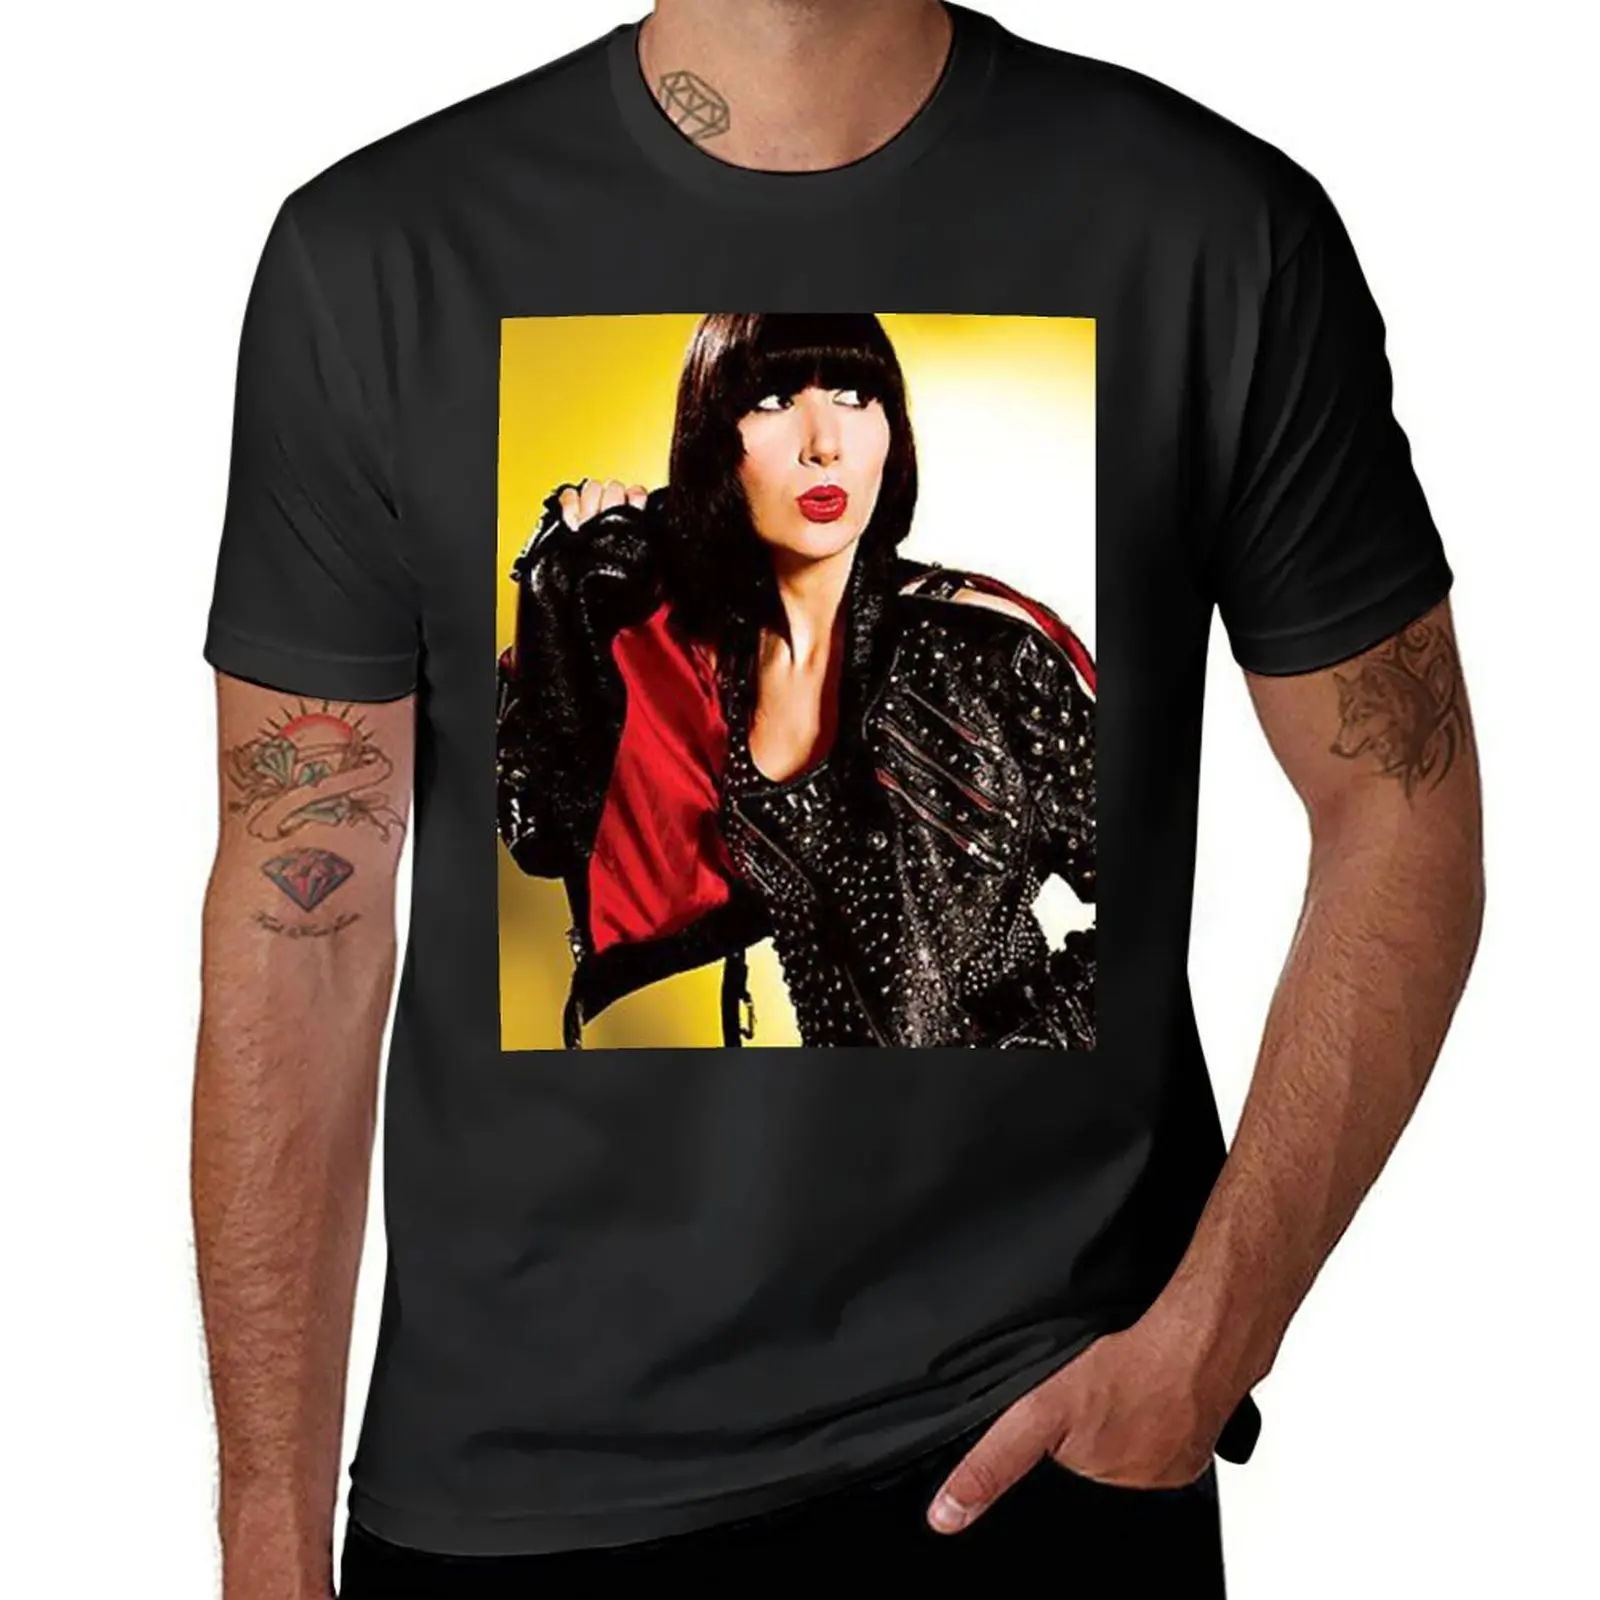 Новая футболка Karen O - Album, черные футболки, спортивная футболка с графическим рисунком, мужские футболки с графическим рисунком